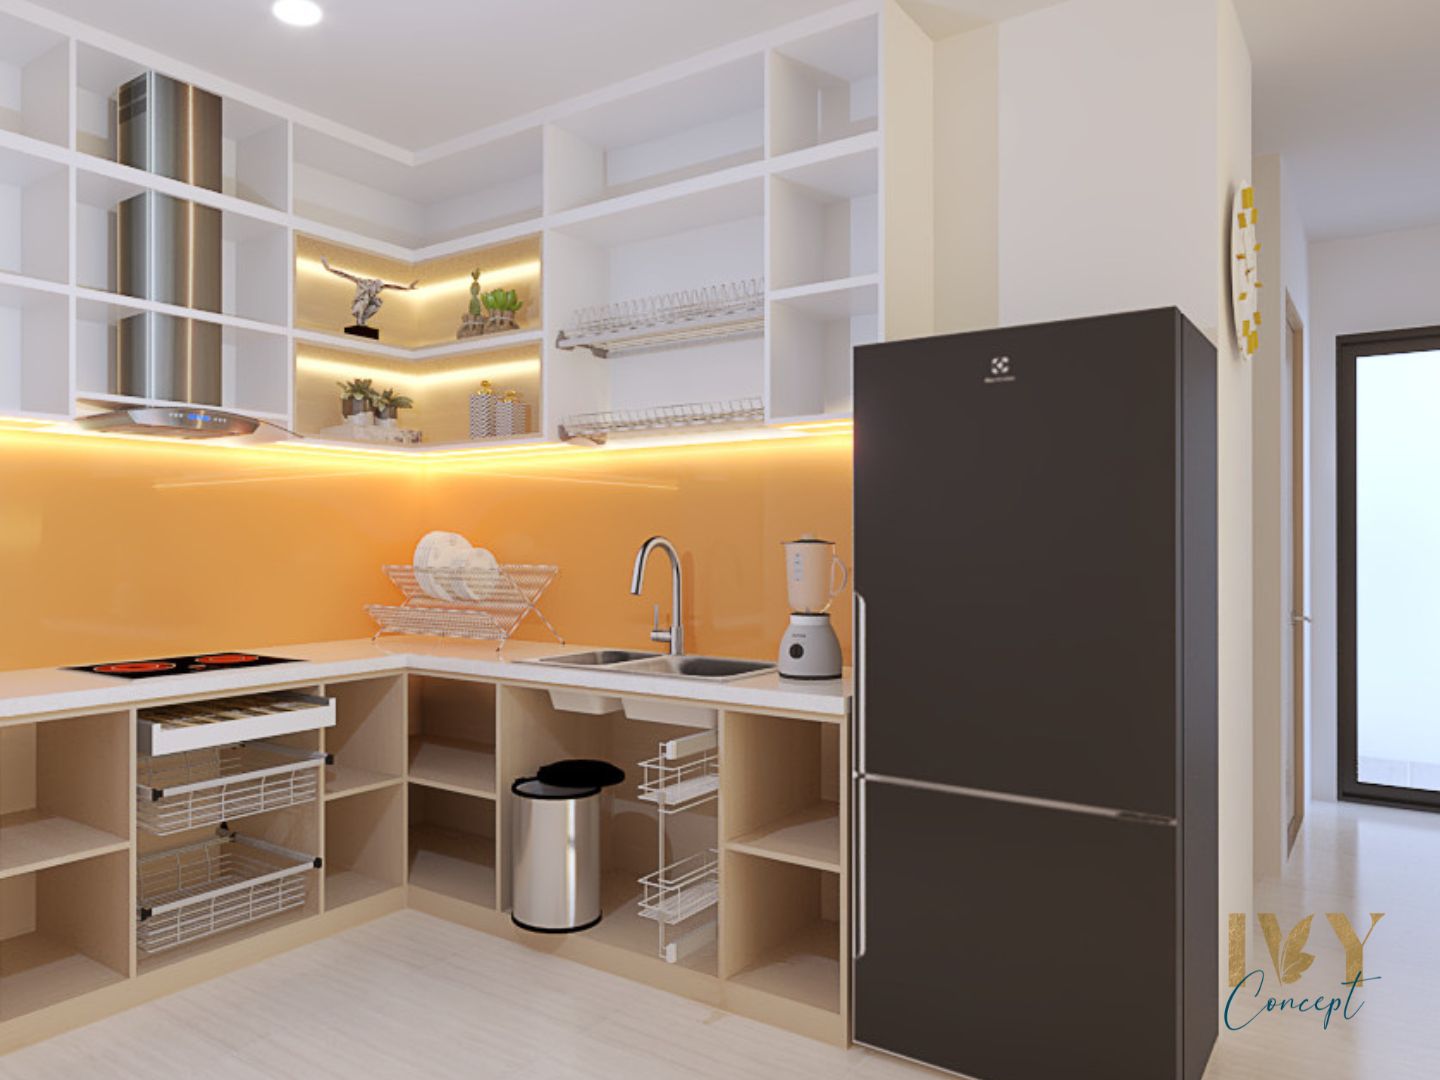 Phòng bếp, phong cách Hiện đại Modern, thiết kế concept nội thất, căn hộ Vinhomes Grand Park